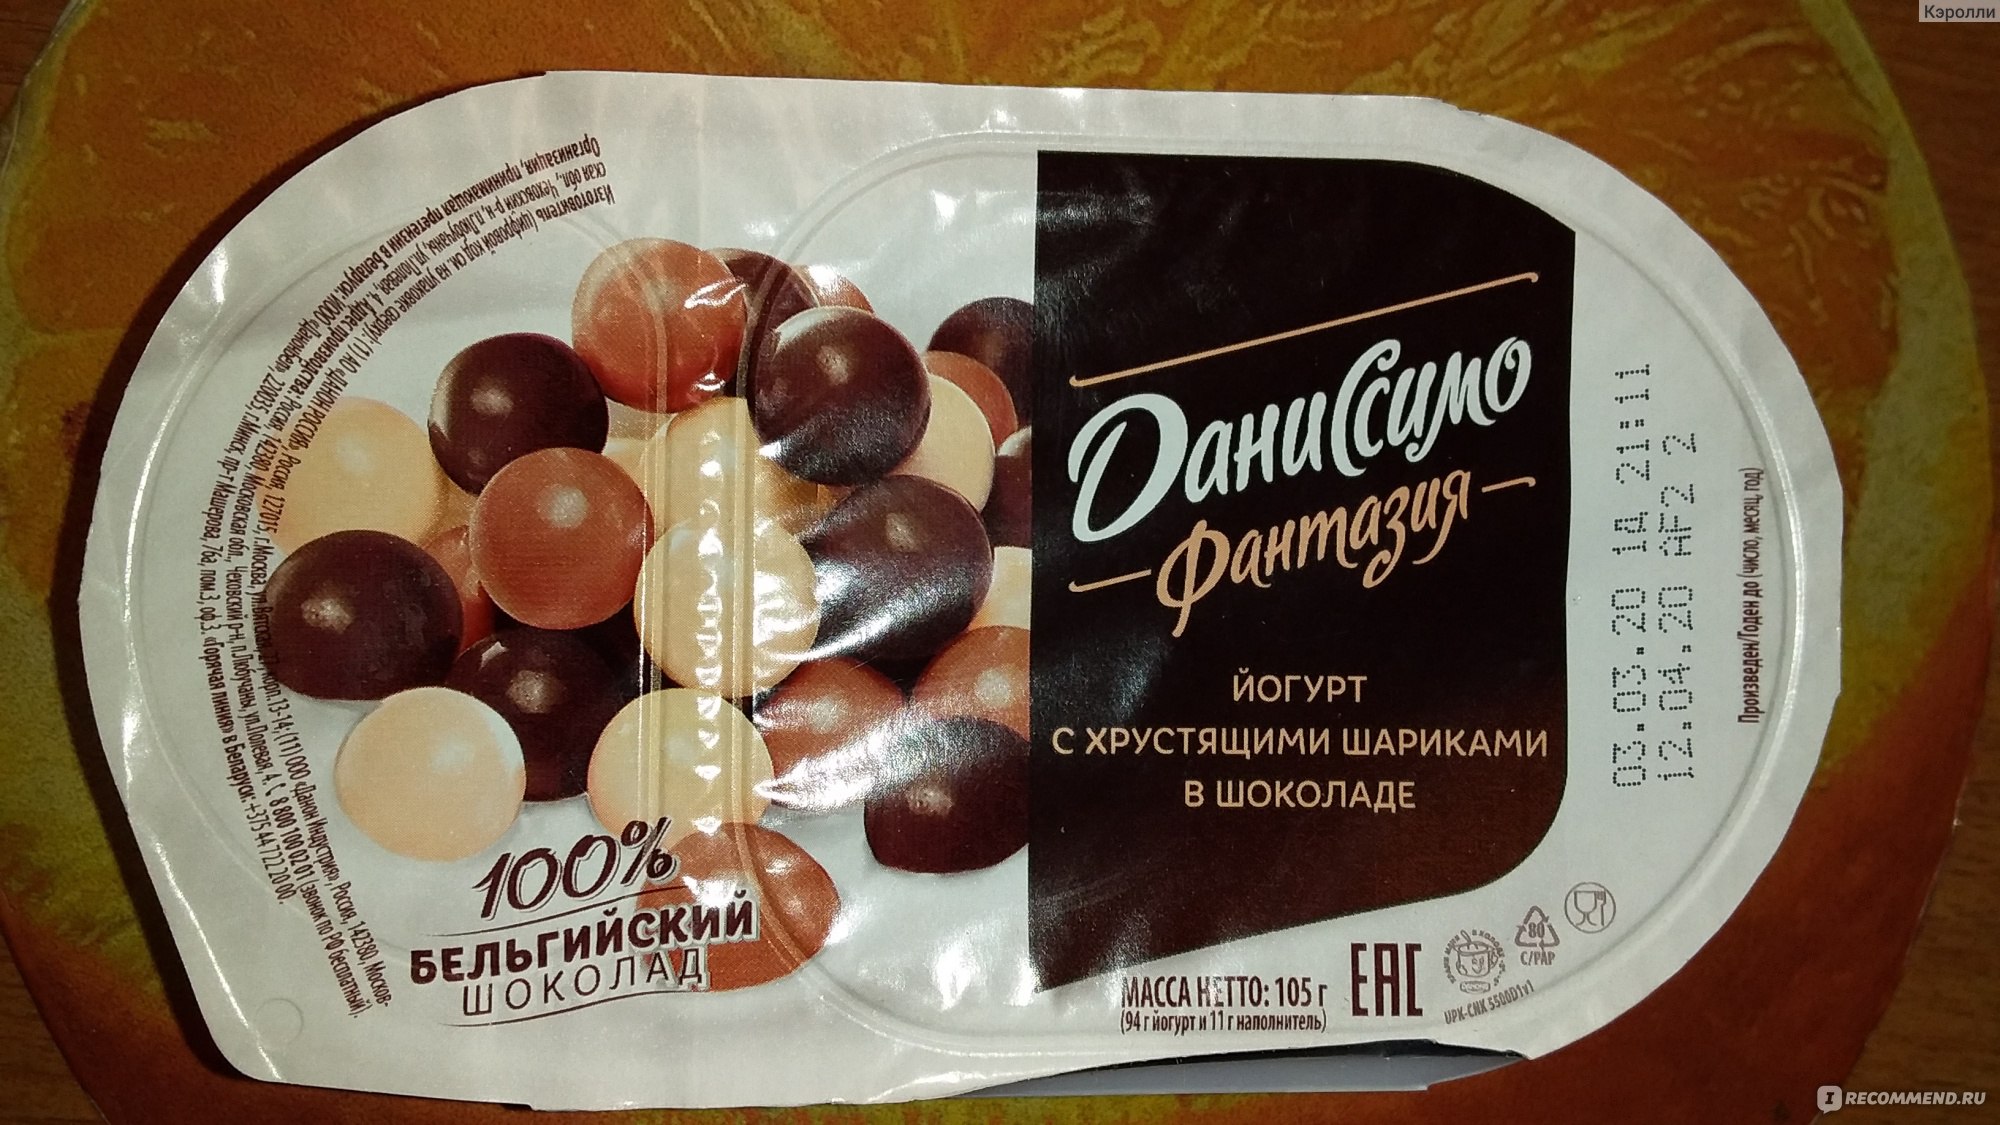 Йогурт Даниссимо Шоколадный